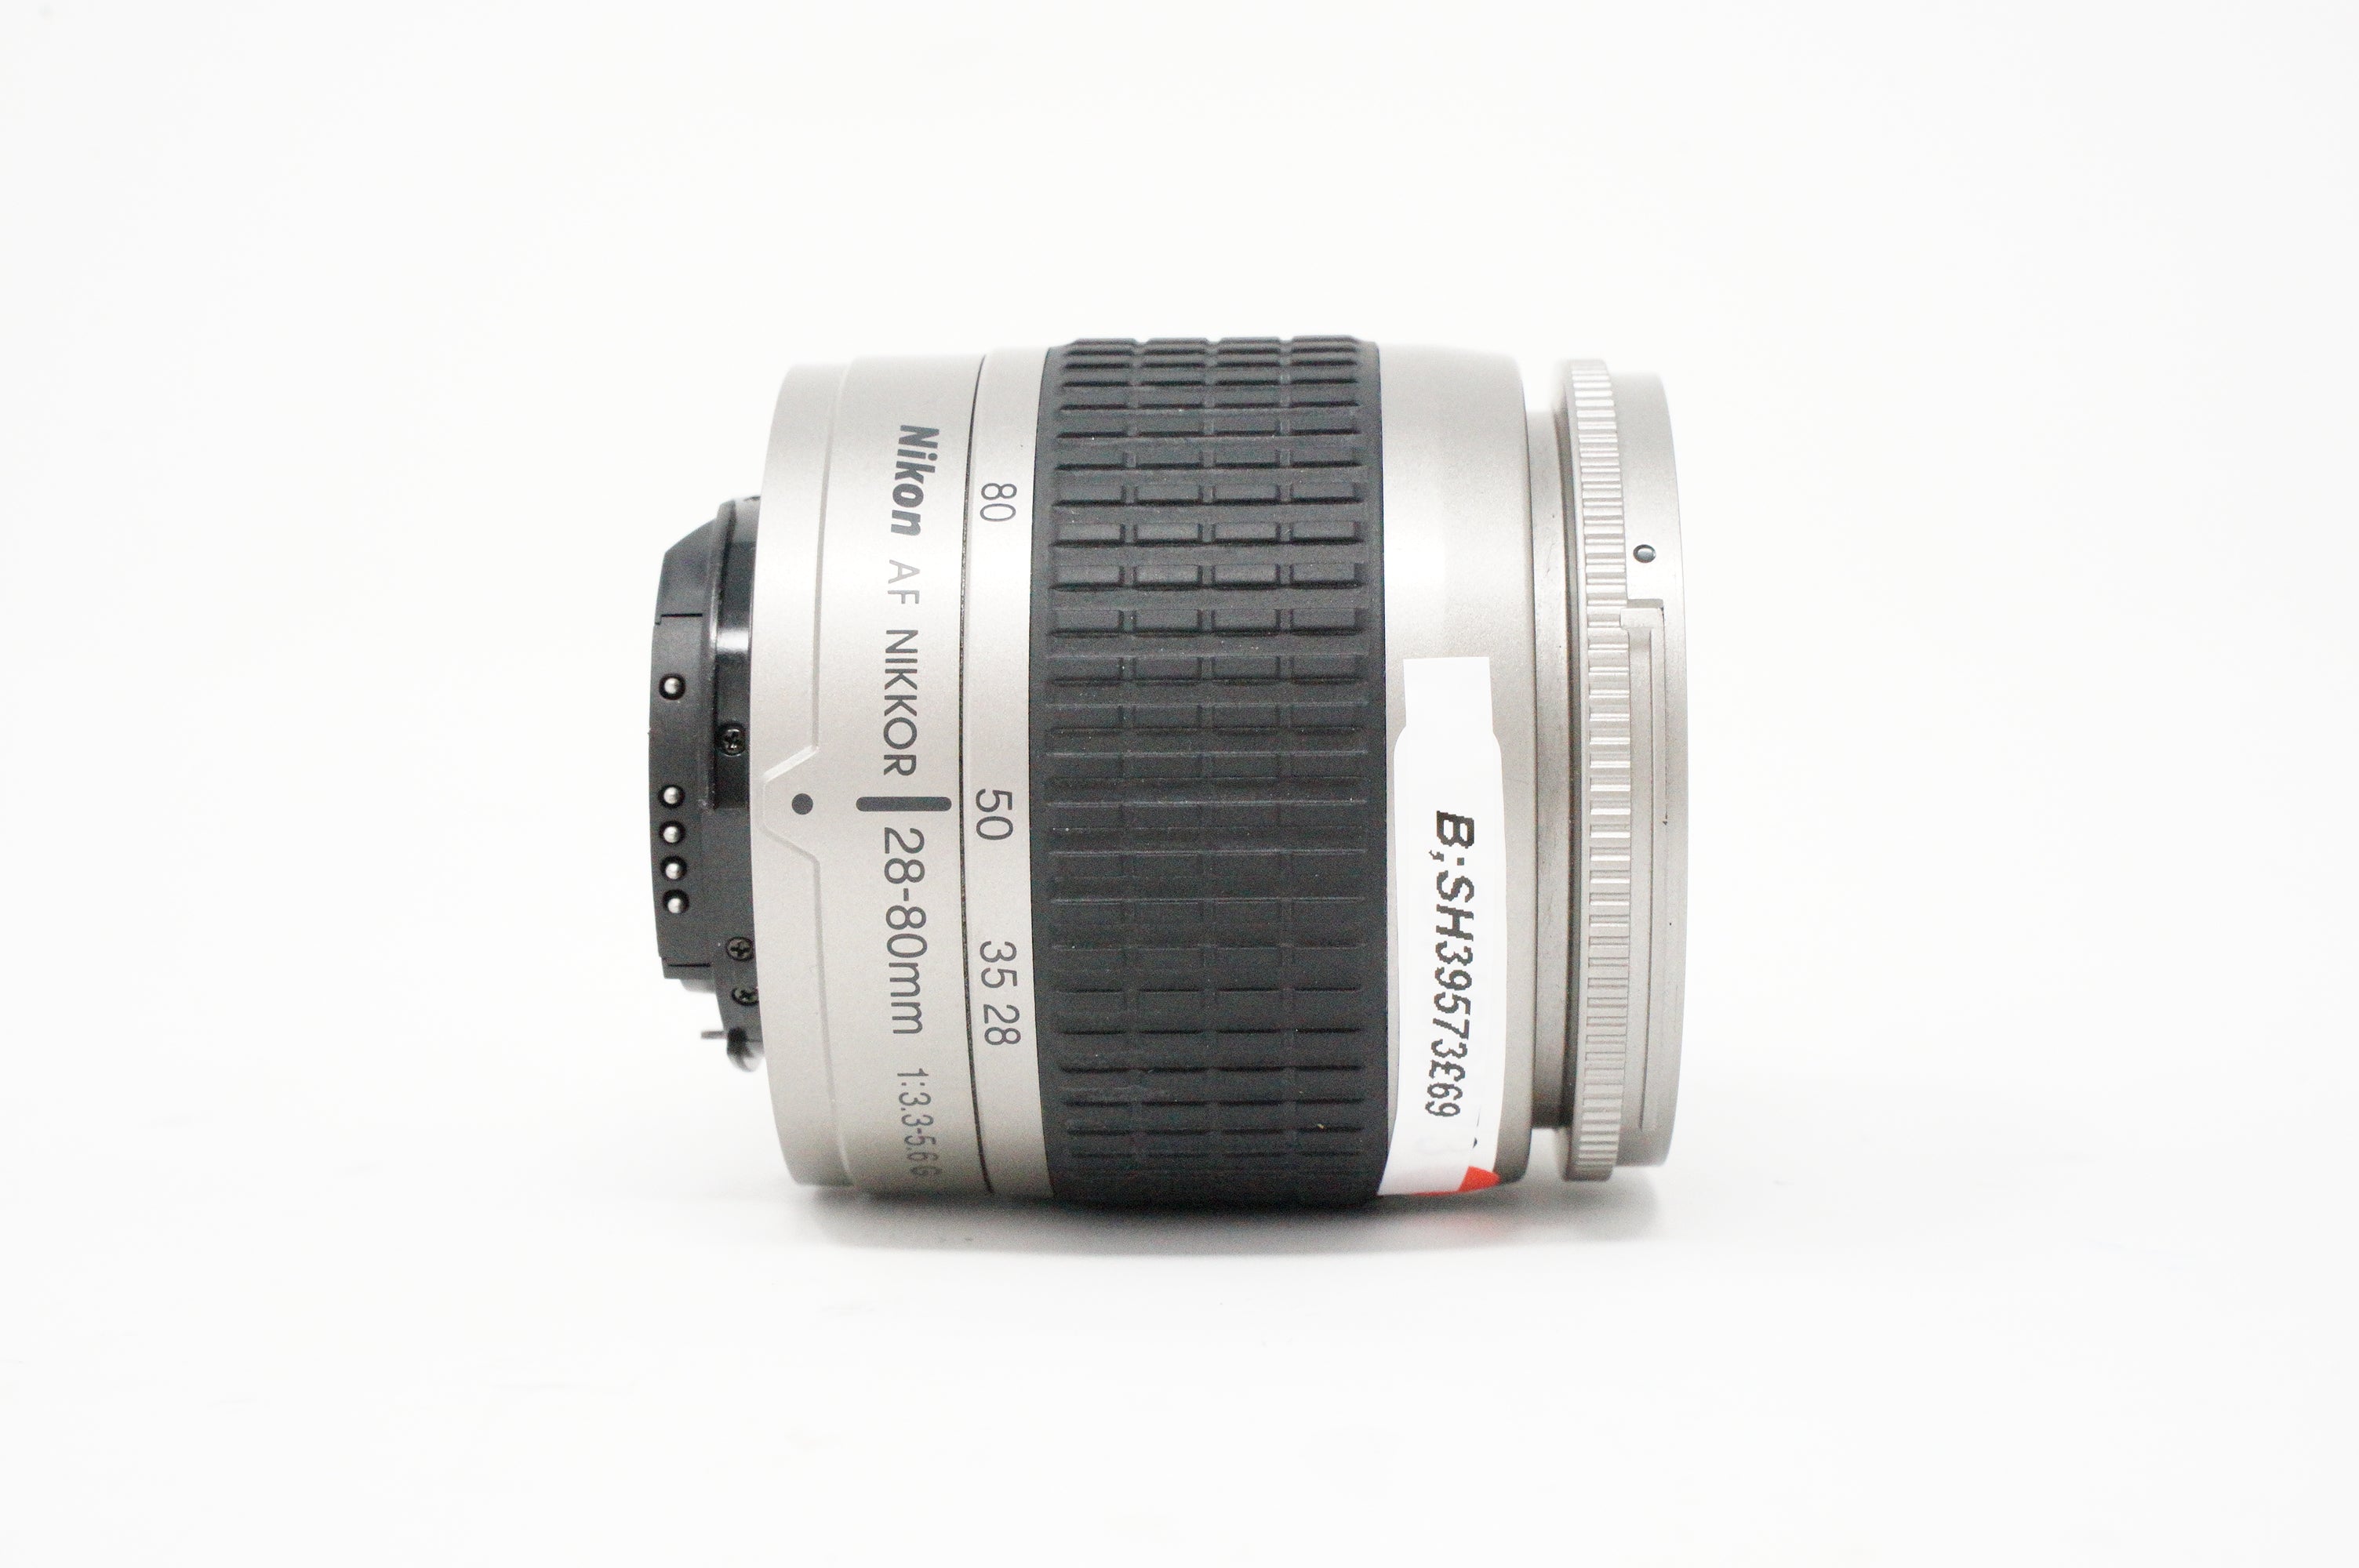 Image of Nikon AF Nikkor 28-80mm F/3.5-5.6G lens side